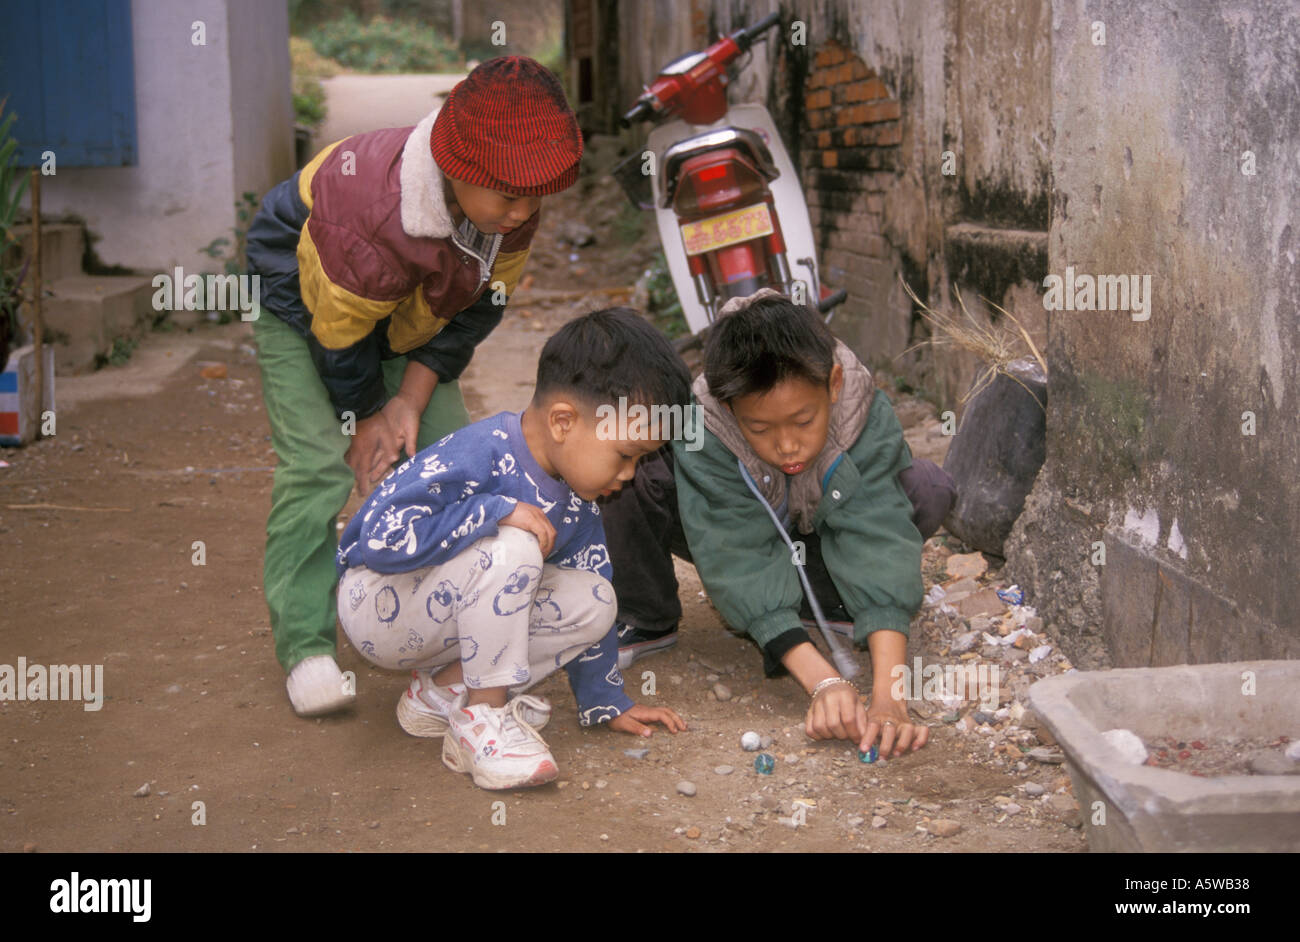 Garçons jouant aux billes Laos Luang Prabang Banque D'Images